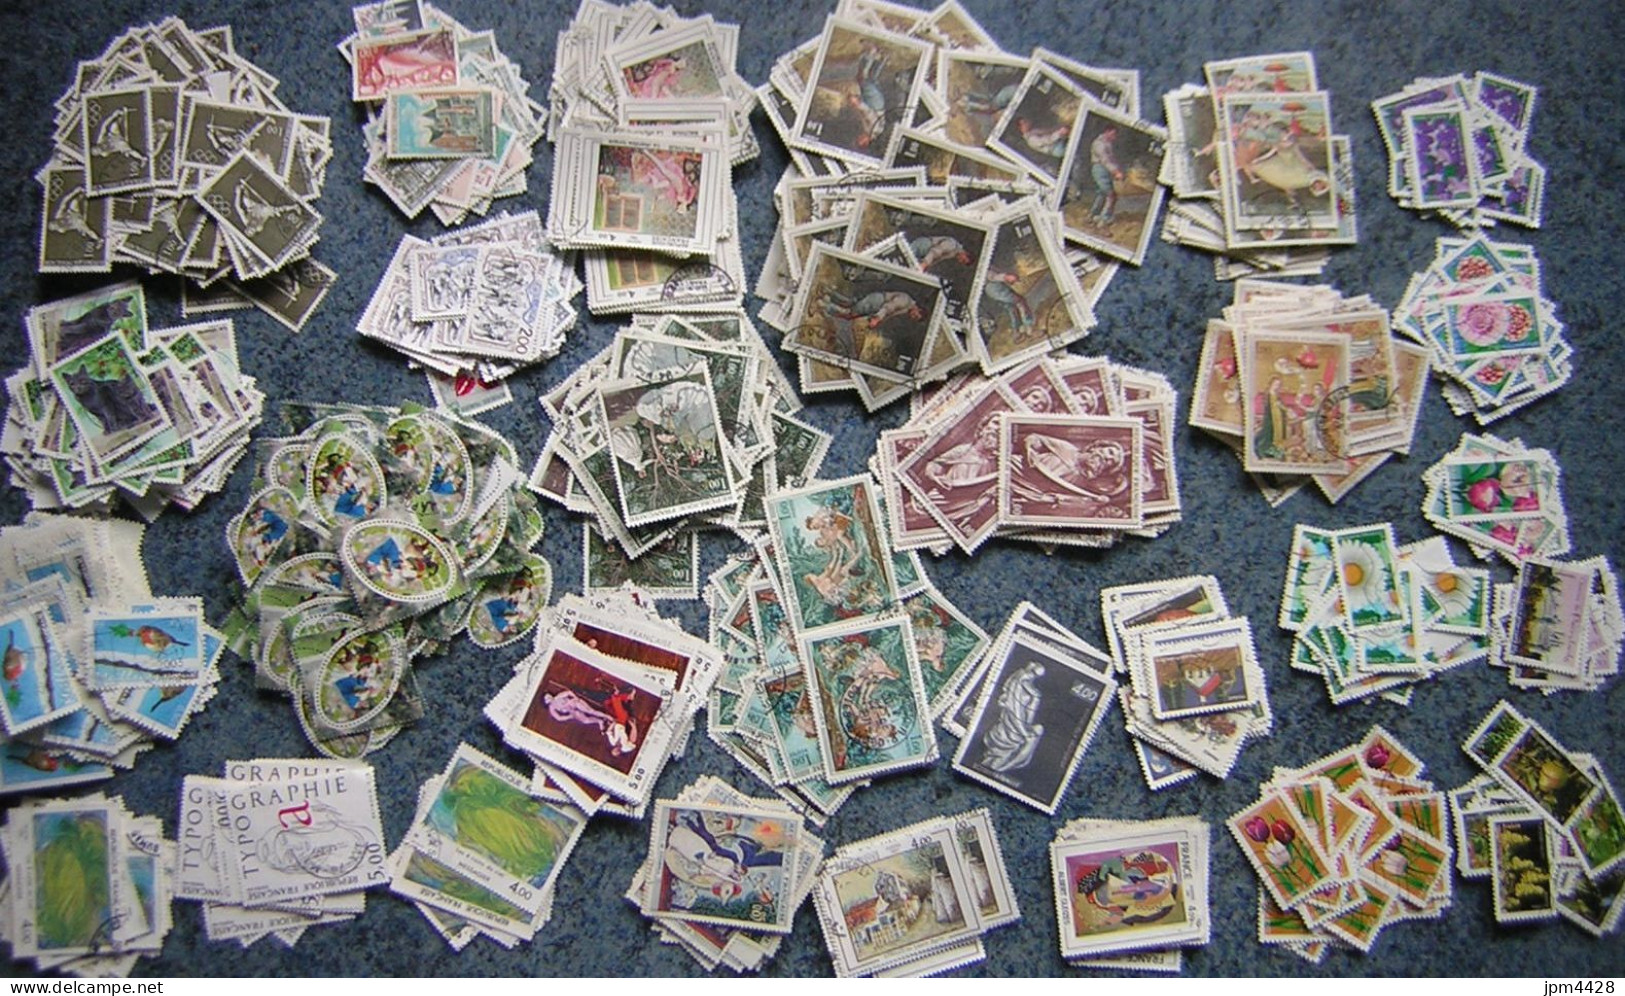 France Lot Vrac de 1070grs TP oblitérés, miliers de timbres, bon lot  - sans Papier - certains timbres en XX exemplaires